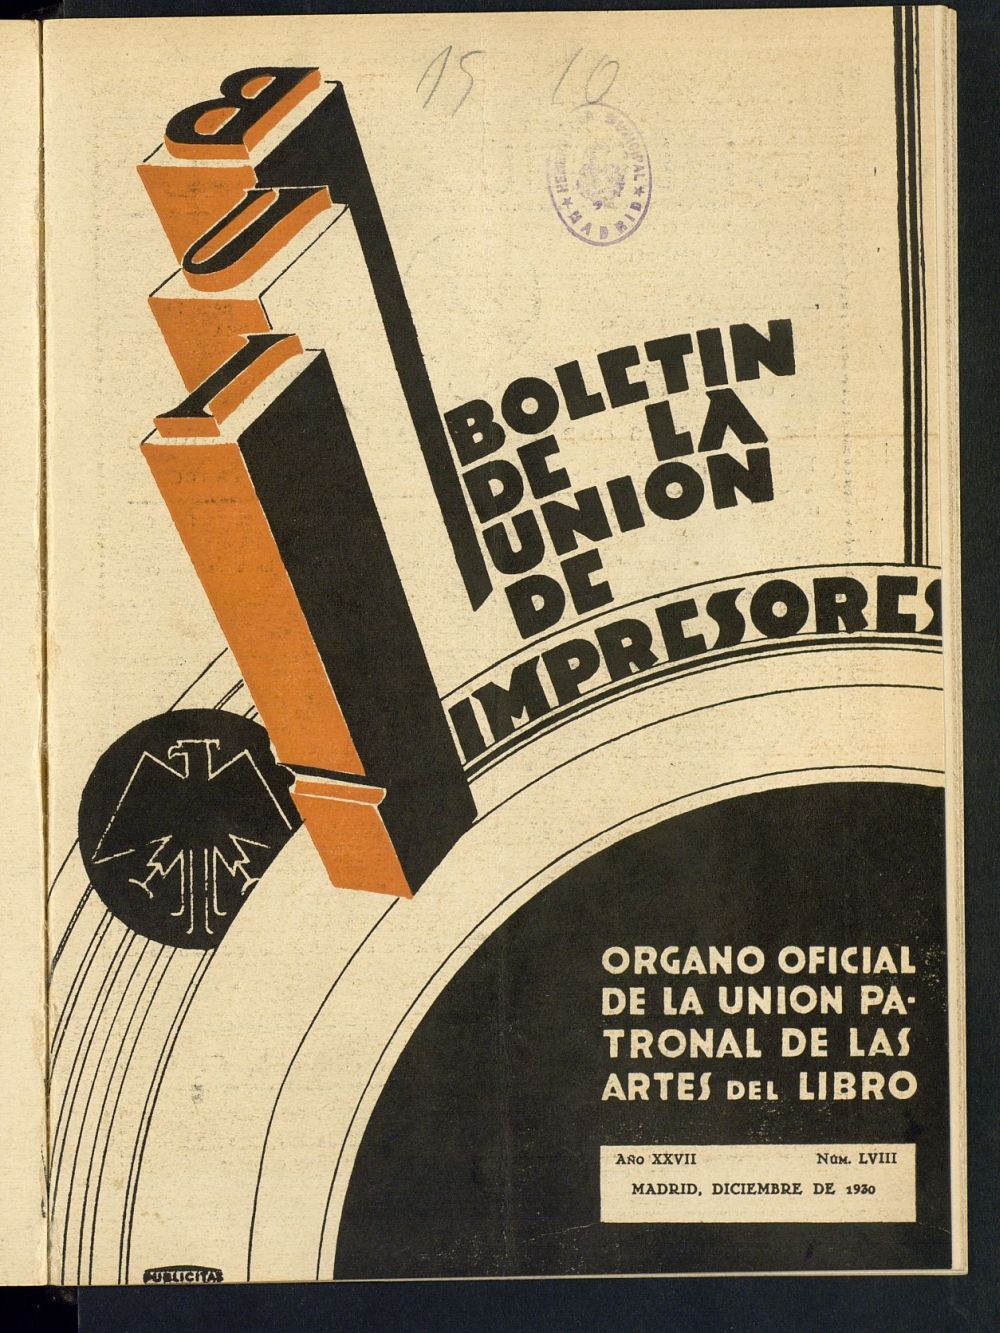 Boletn de la unin de impresores : rgano de la unin patronal de las artes del libro de diciembre de 1930